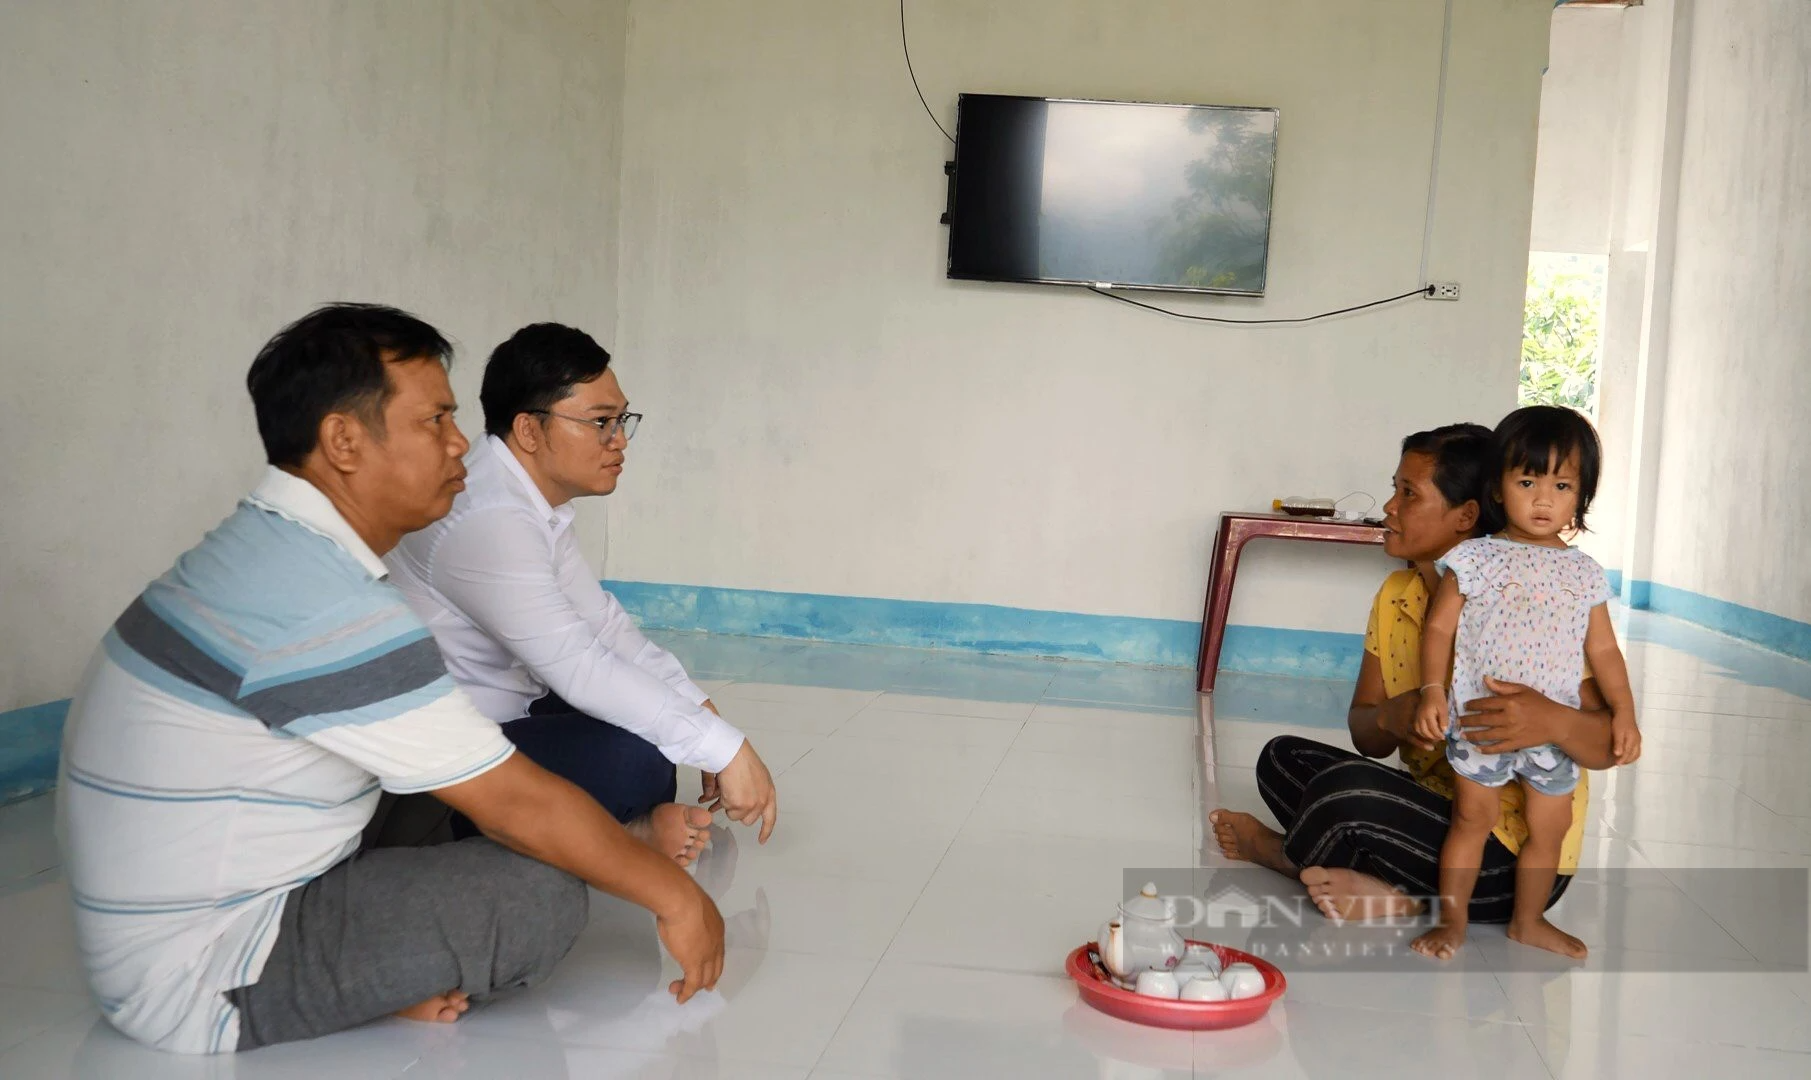 Đồng bào Raglai ở huyện miền núi Bác Ái tỉnh Ninh Thuận đi nước ngoài làm ăn để thoát nghèo - Ảnh 1.